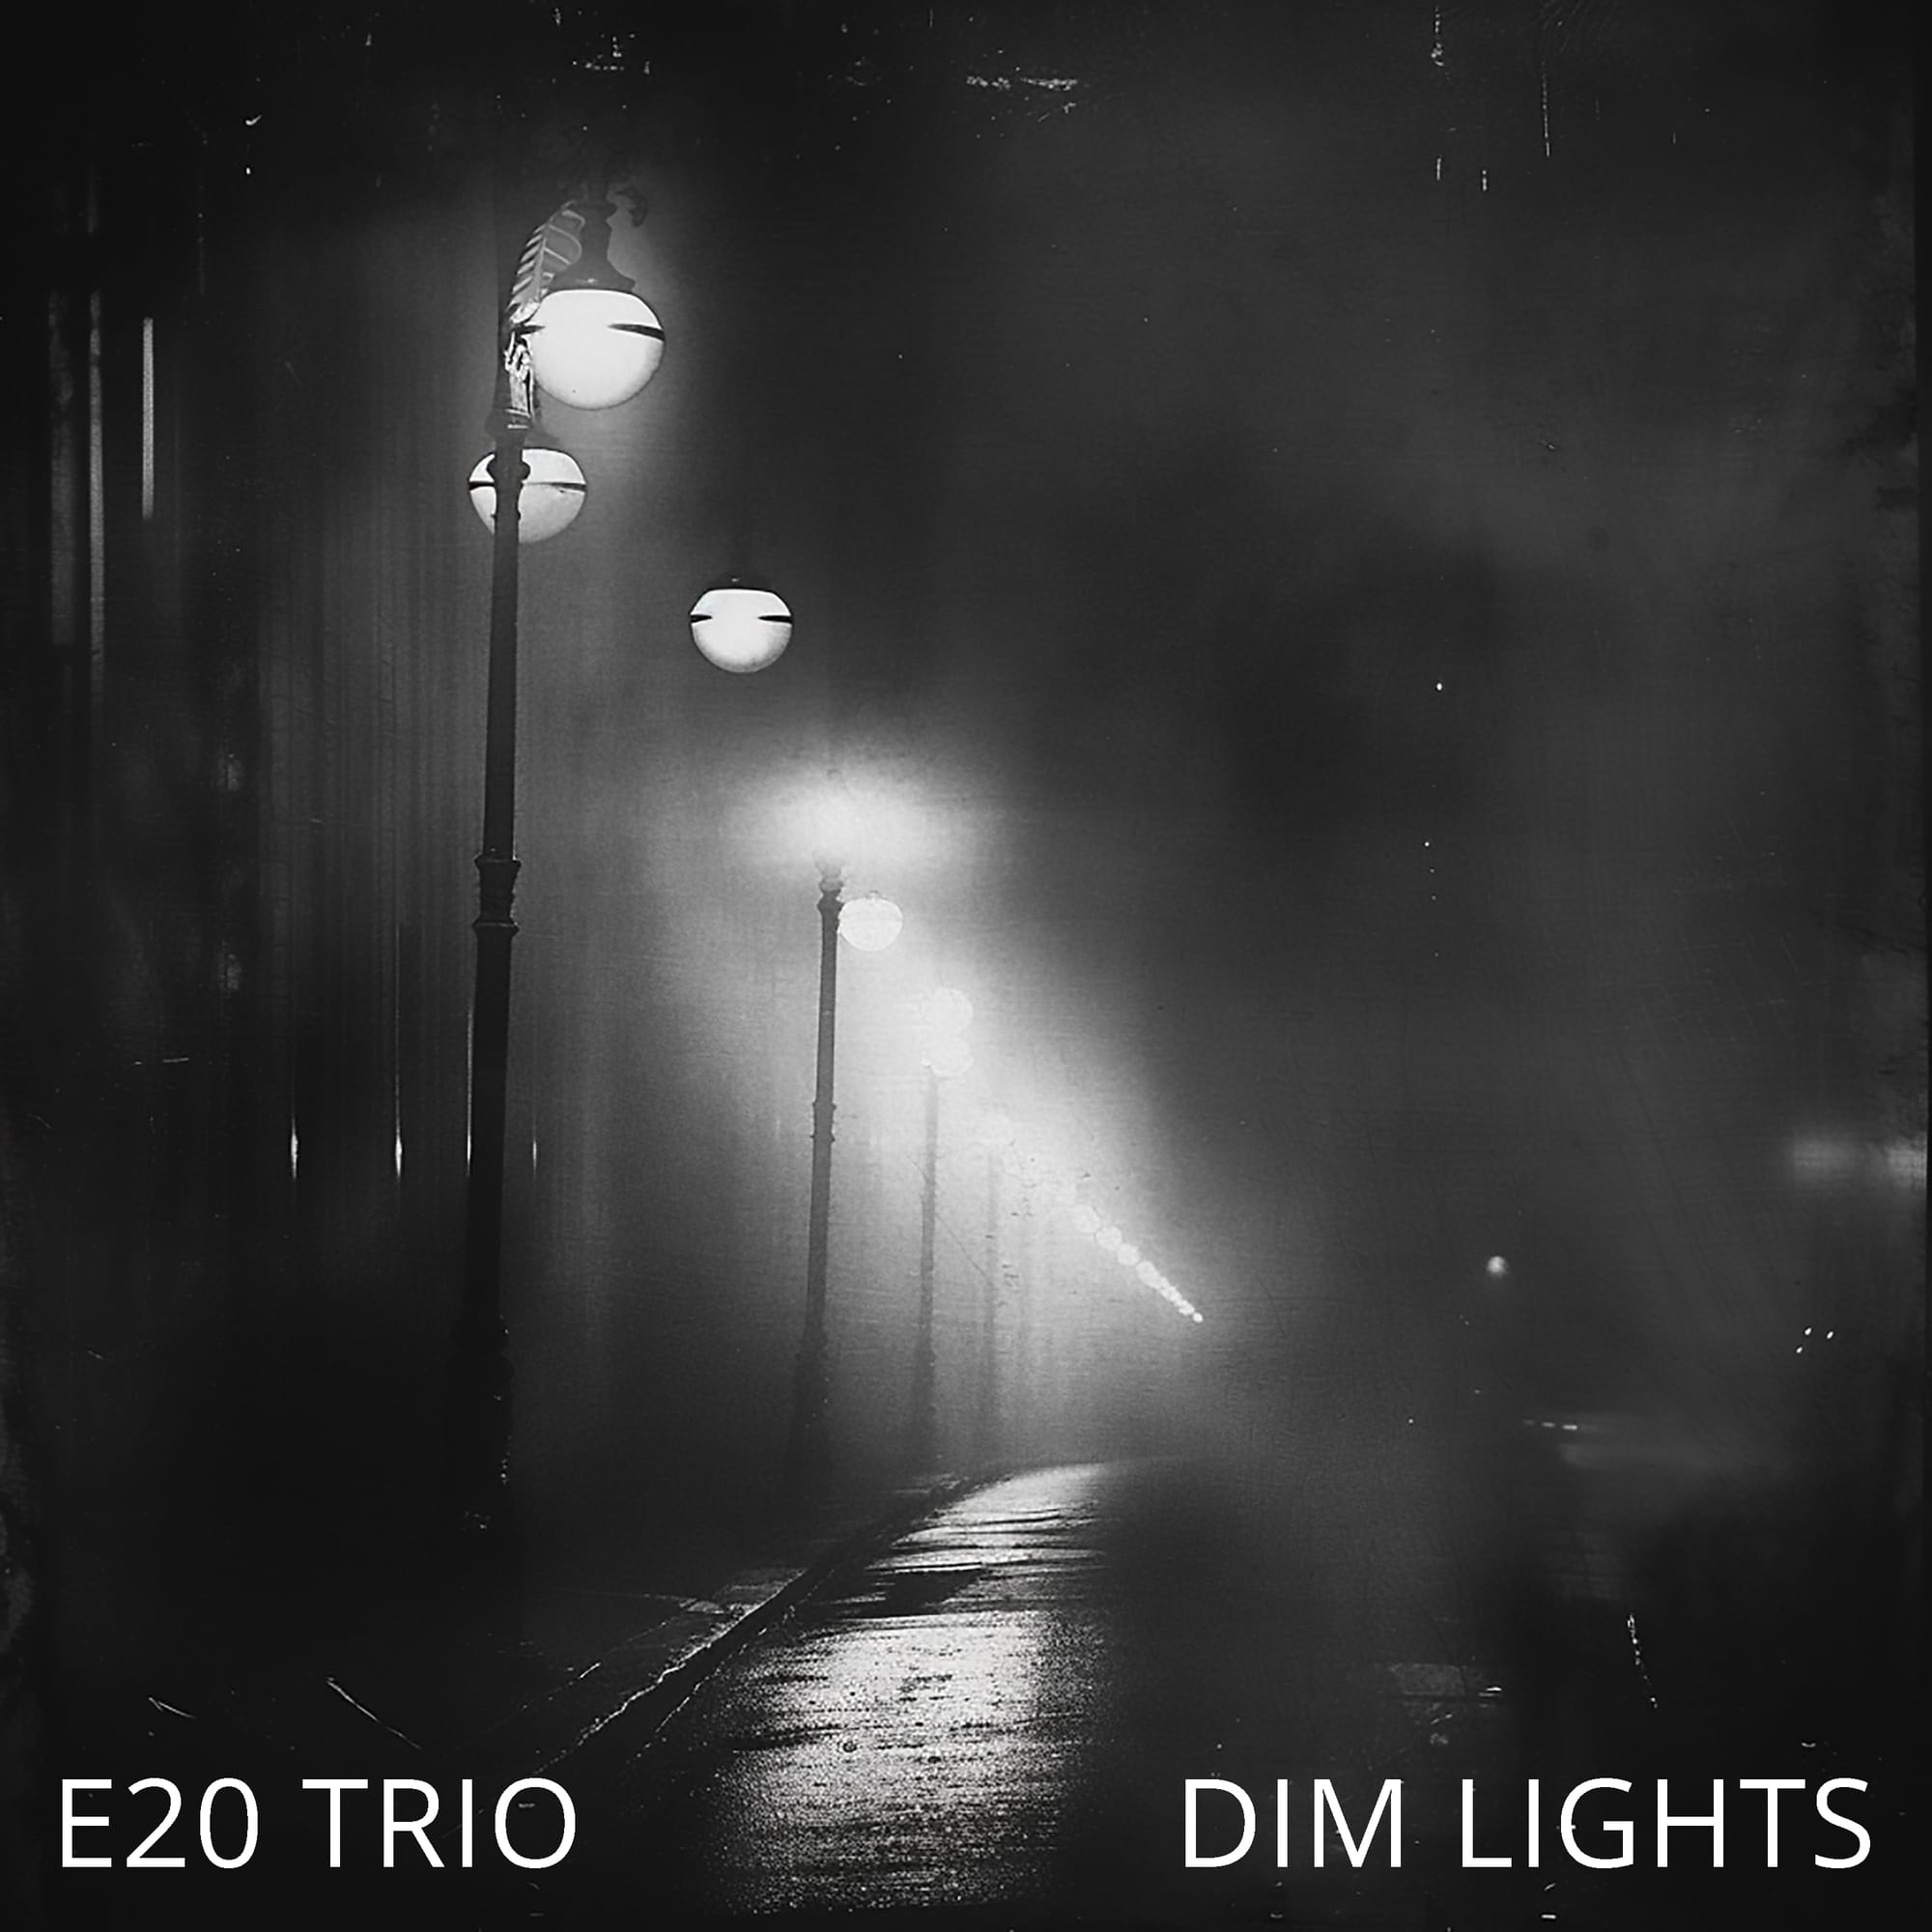 "Dim Lights" by E20 Trio